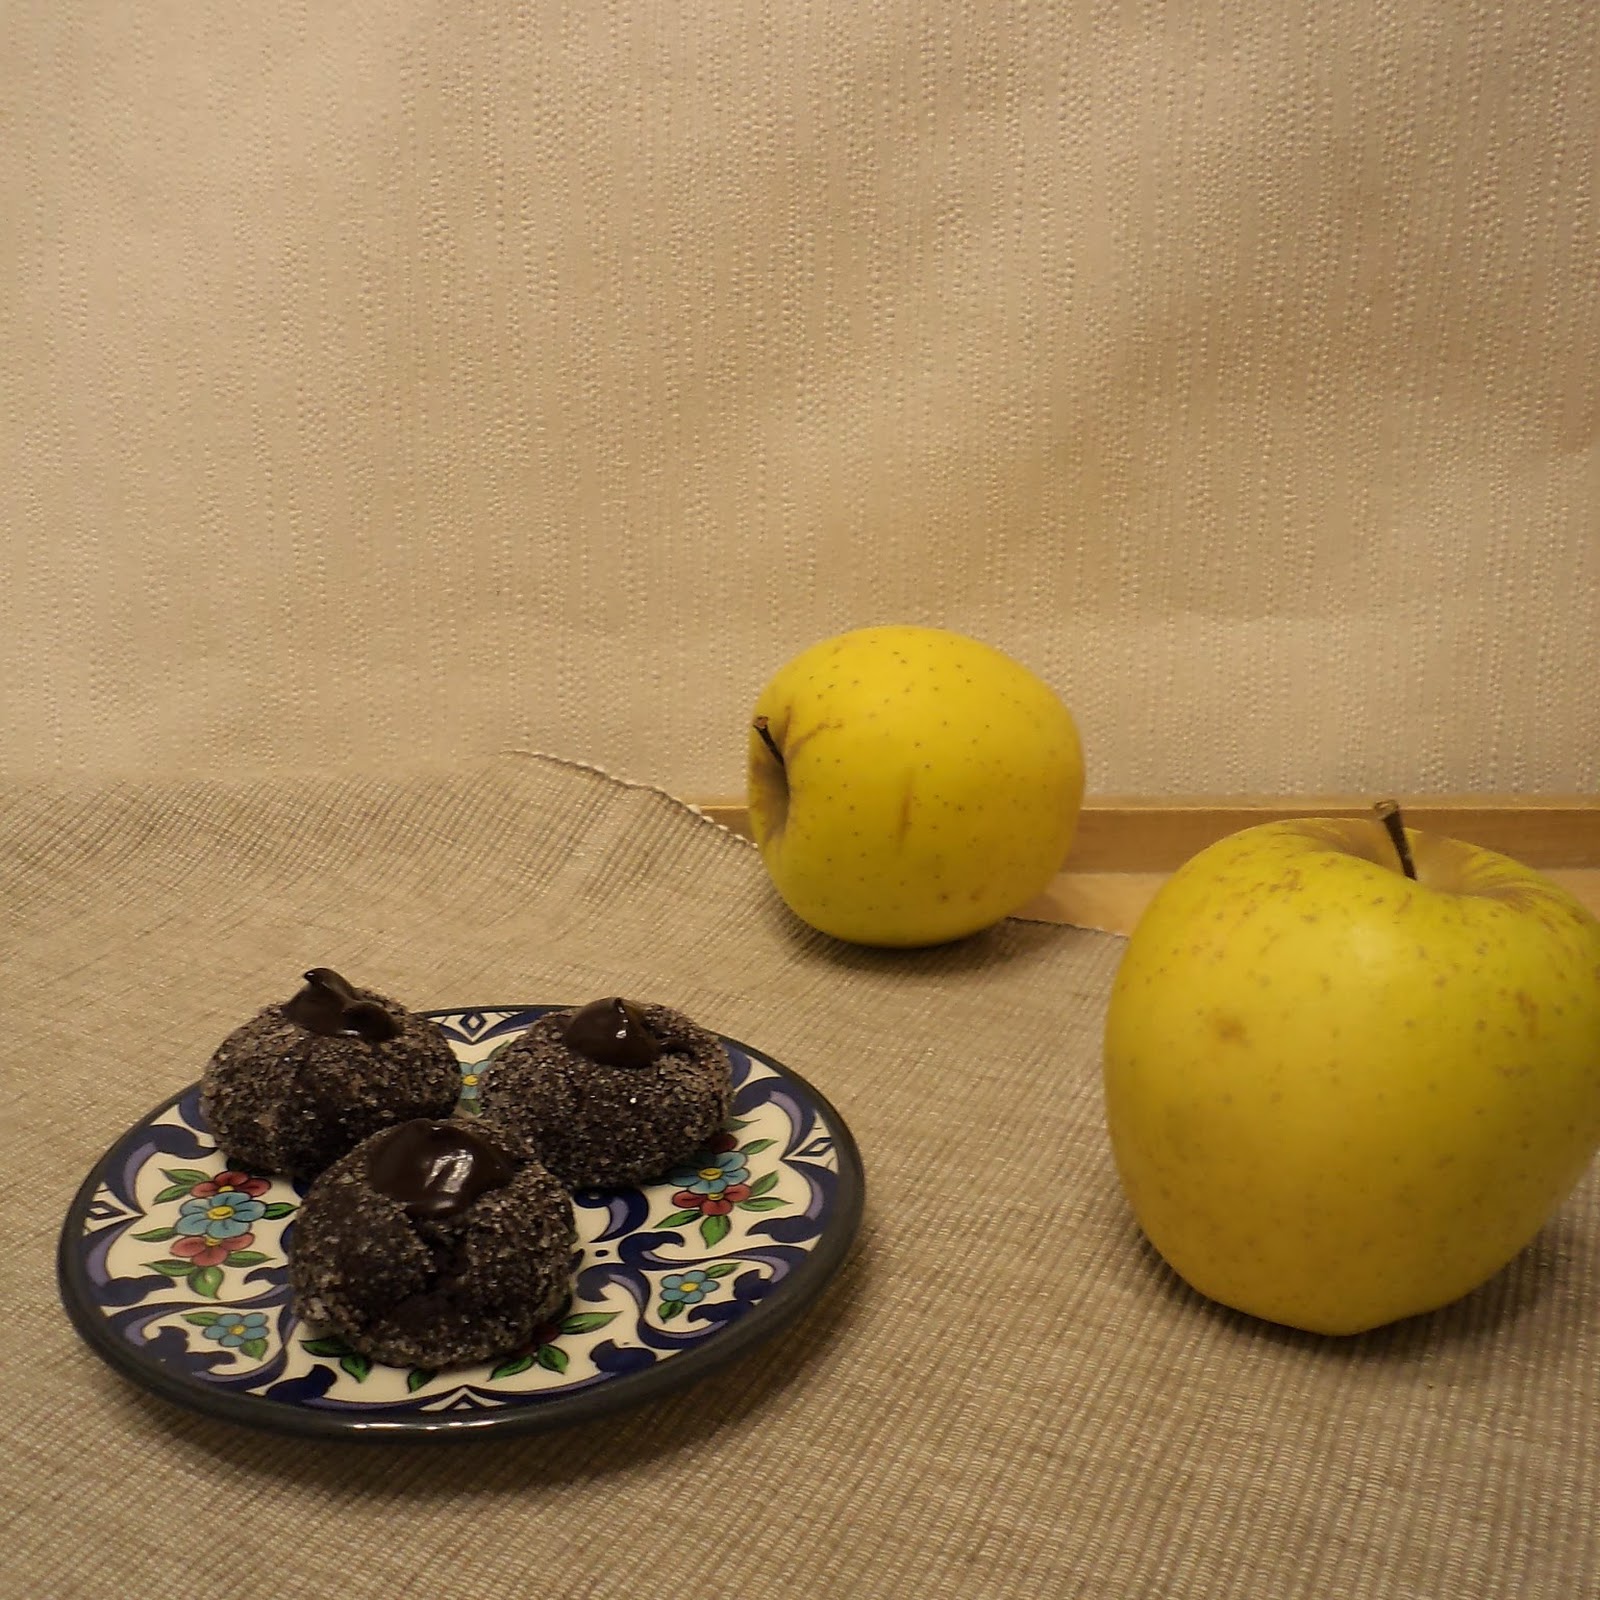 Czekoladowe ciasteczka z oczkiem / Chocolate cookies decorated with chocolate